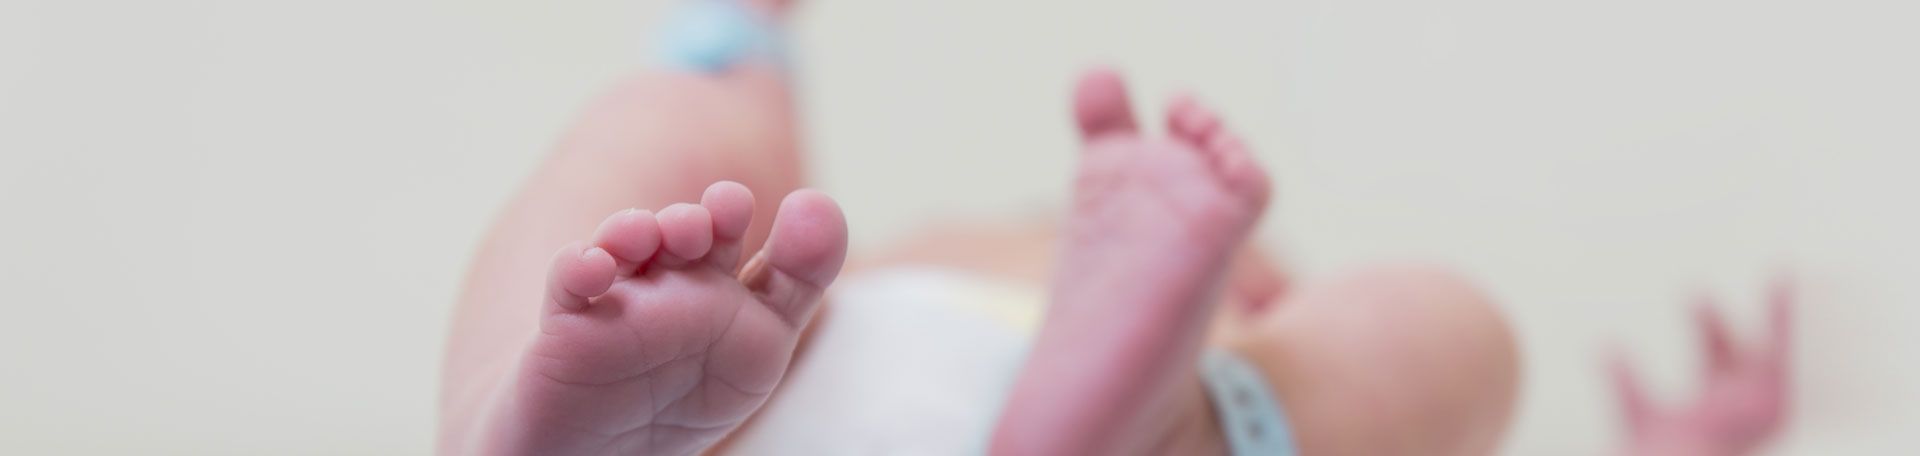 Illustrationsbild: Füße eines Neugeborenen